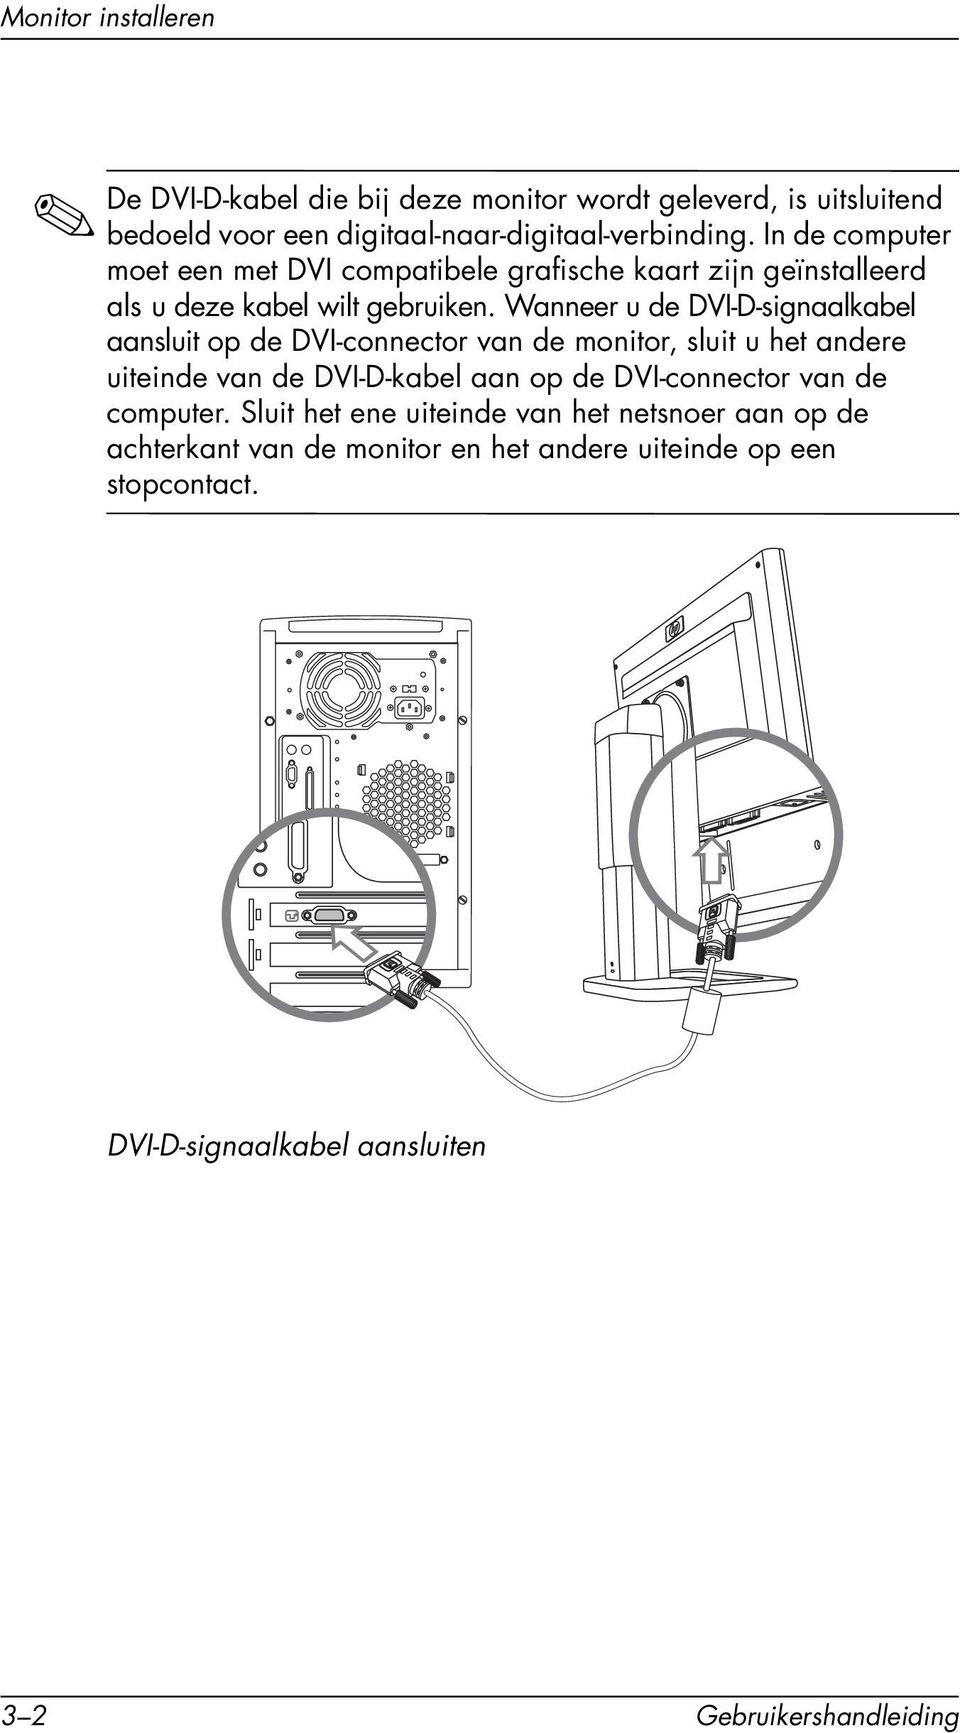 Wanneer u de DVI-D-signaalkabel aansluit op de DVI-connector van de monitor, sluit u het andere uiteinde van de DVI-D-kabel aan op de DVI-connector